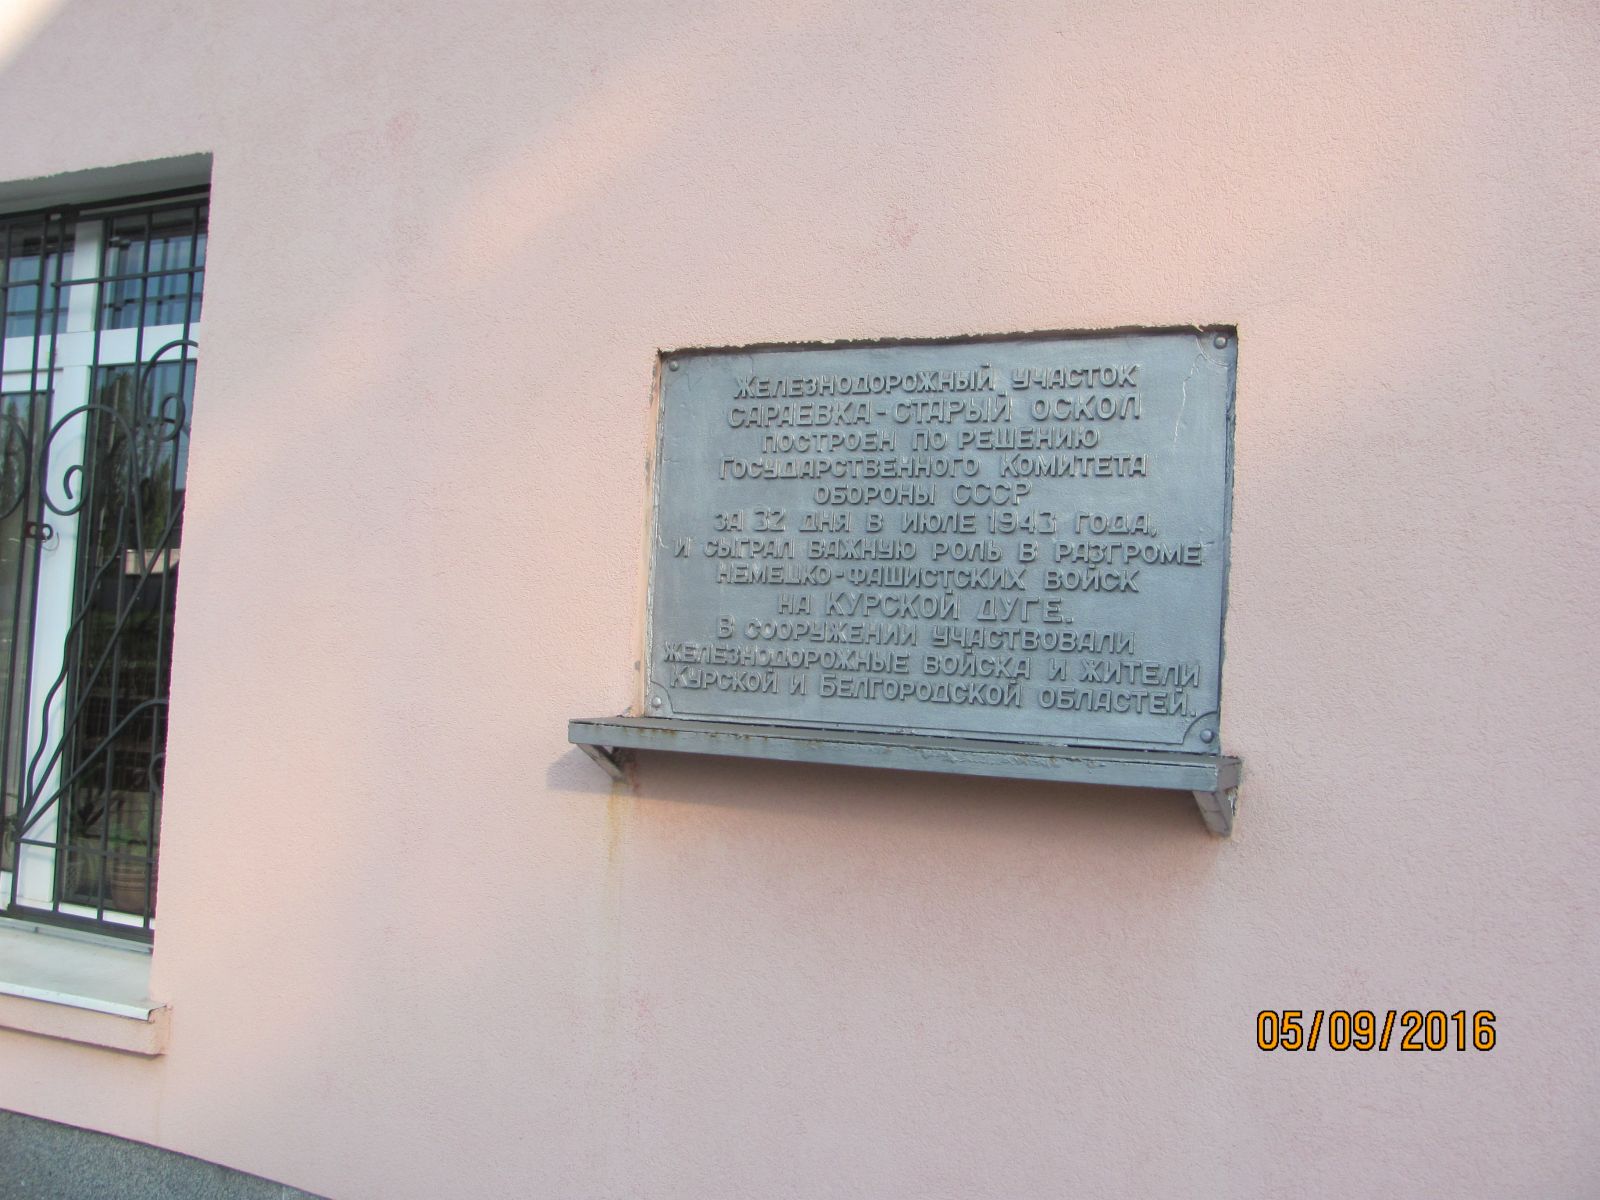 Мемориальная доска, установленная на здании вокзала станции Губкин Юго-Восточной железной дороги